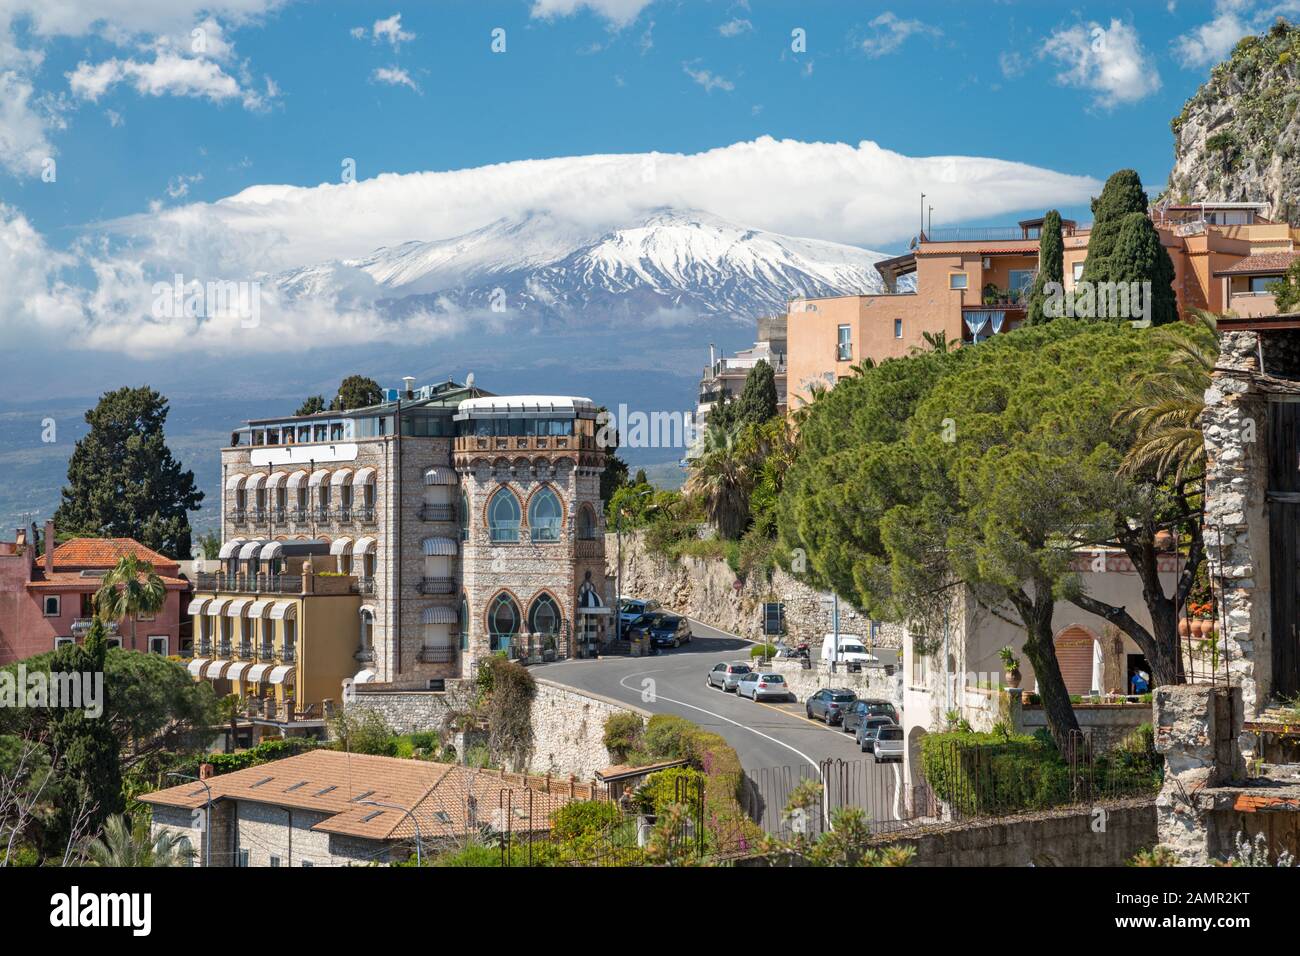 Taormina - The Mt. Etna volcano over the city. Stock Photo